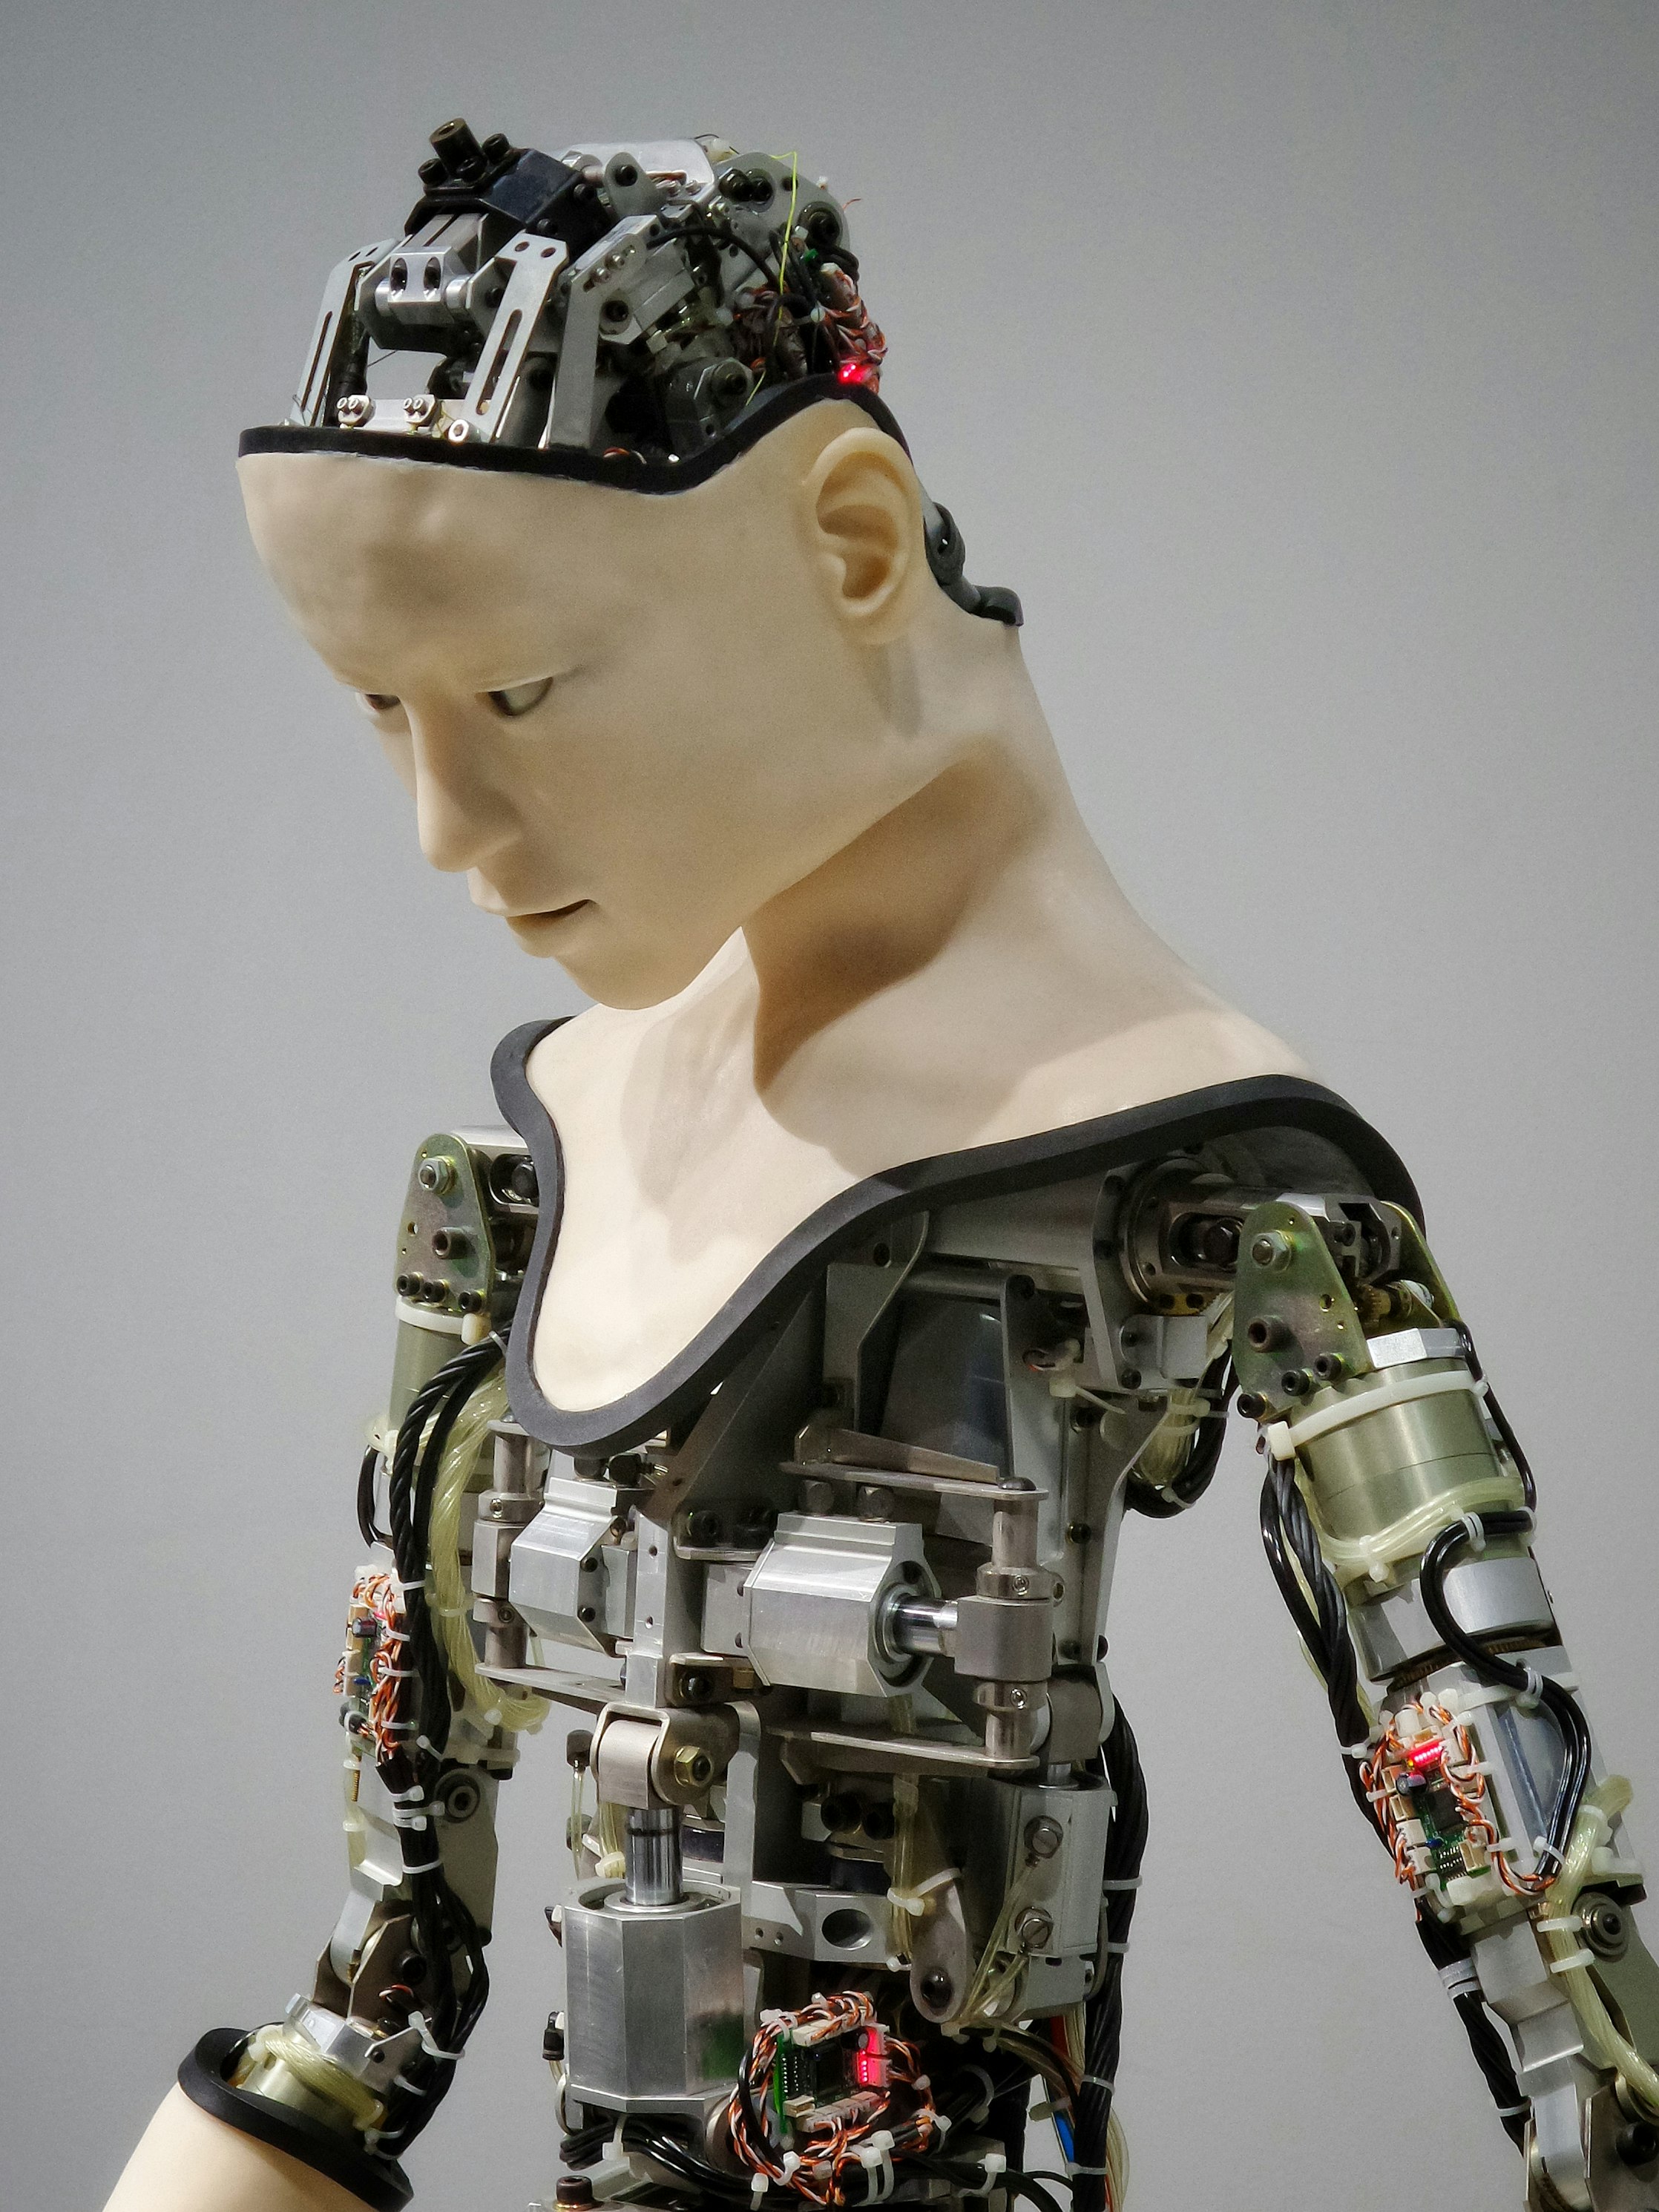 Работа человека с роботом может привести к неожиданным и негативным последствиям